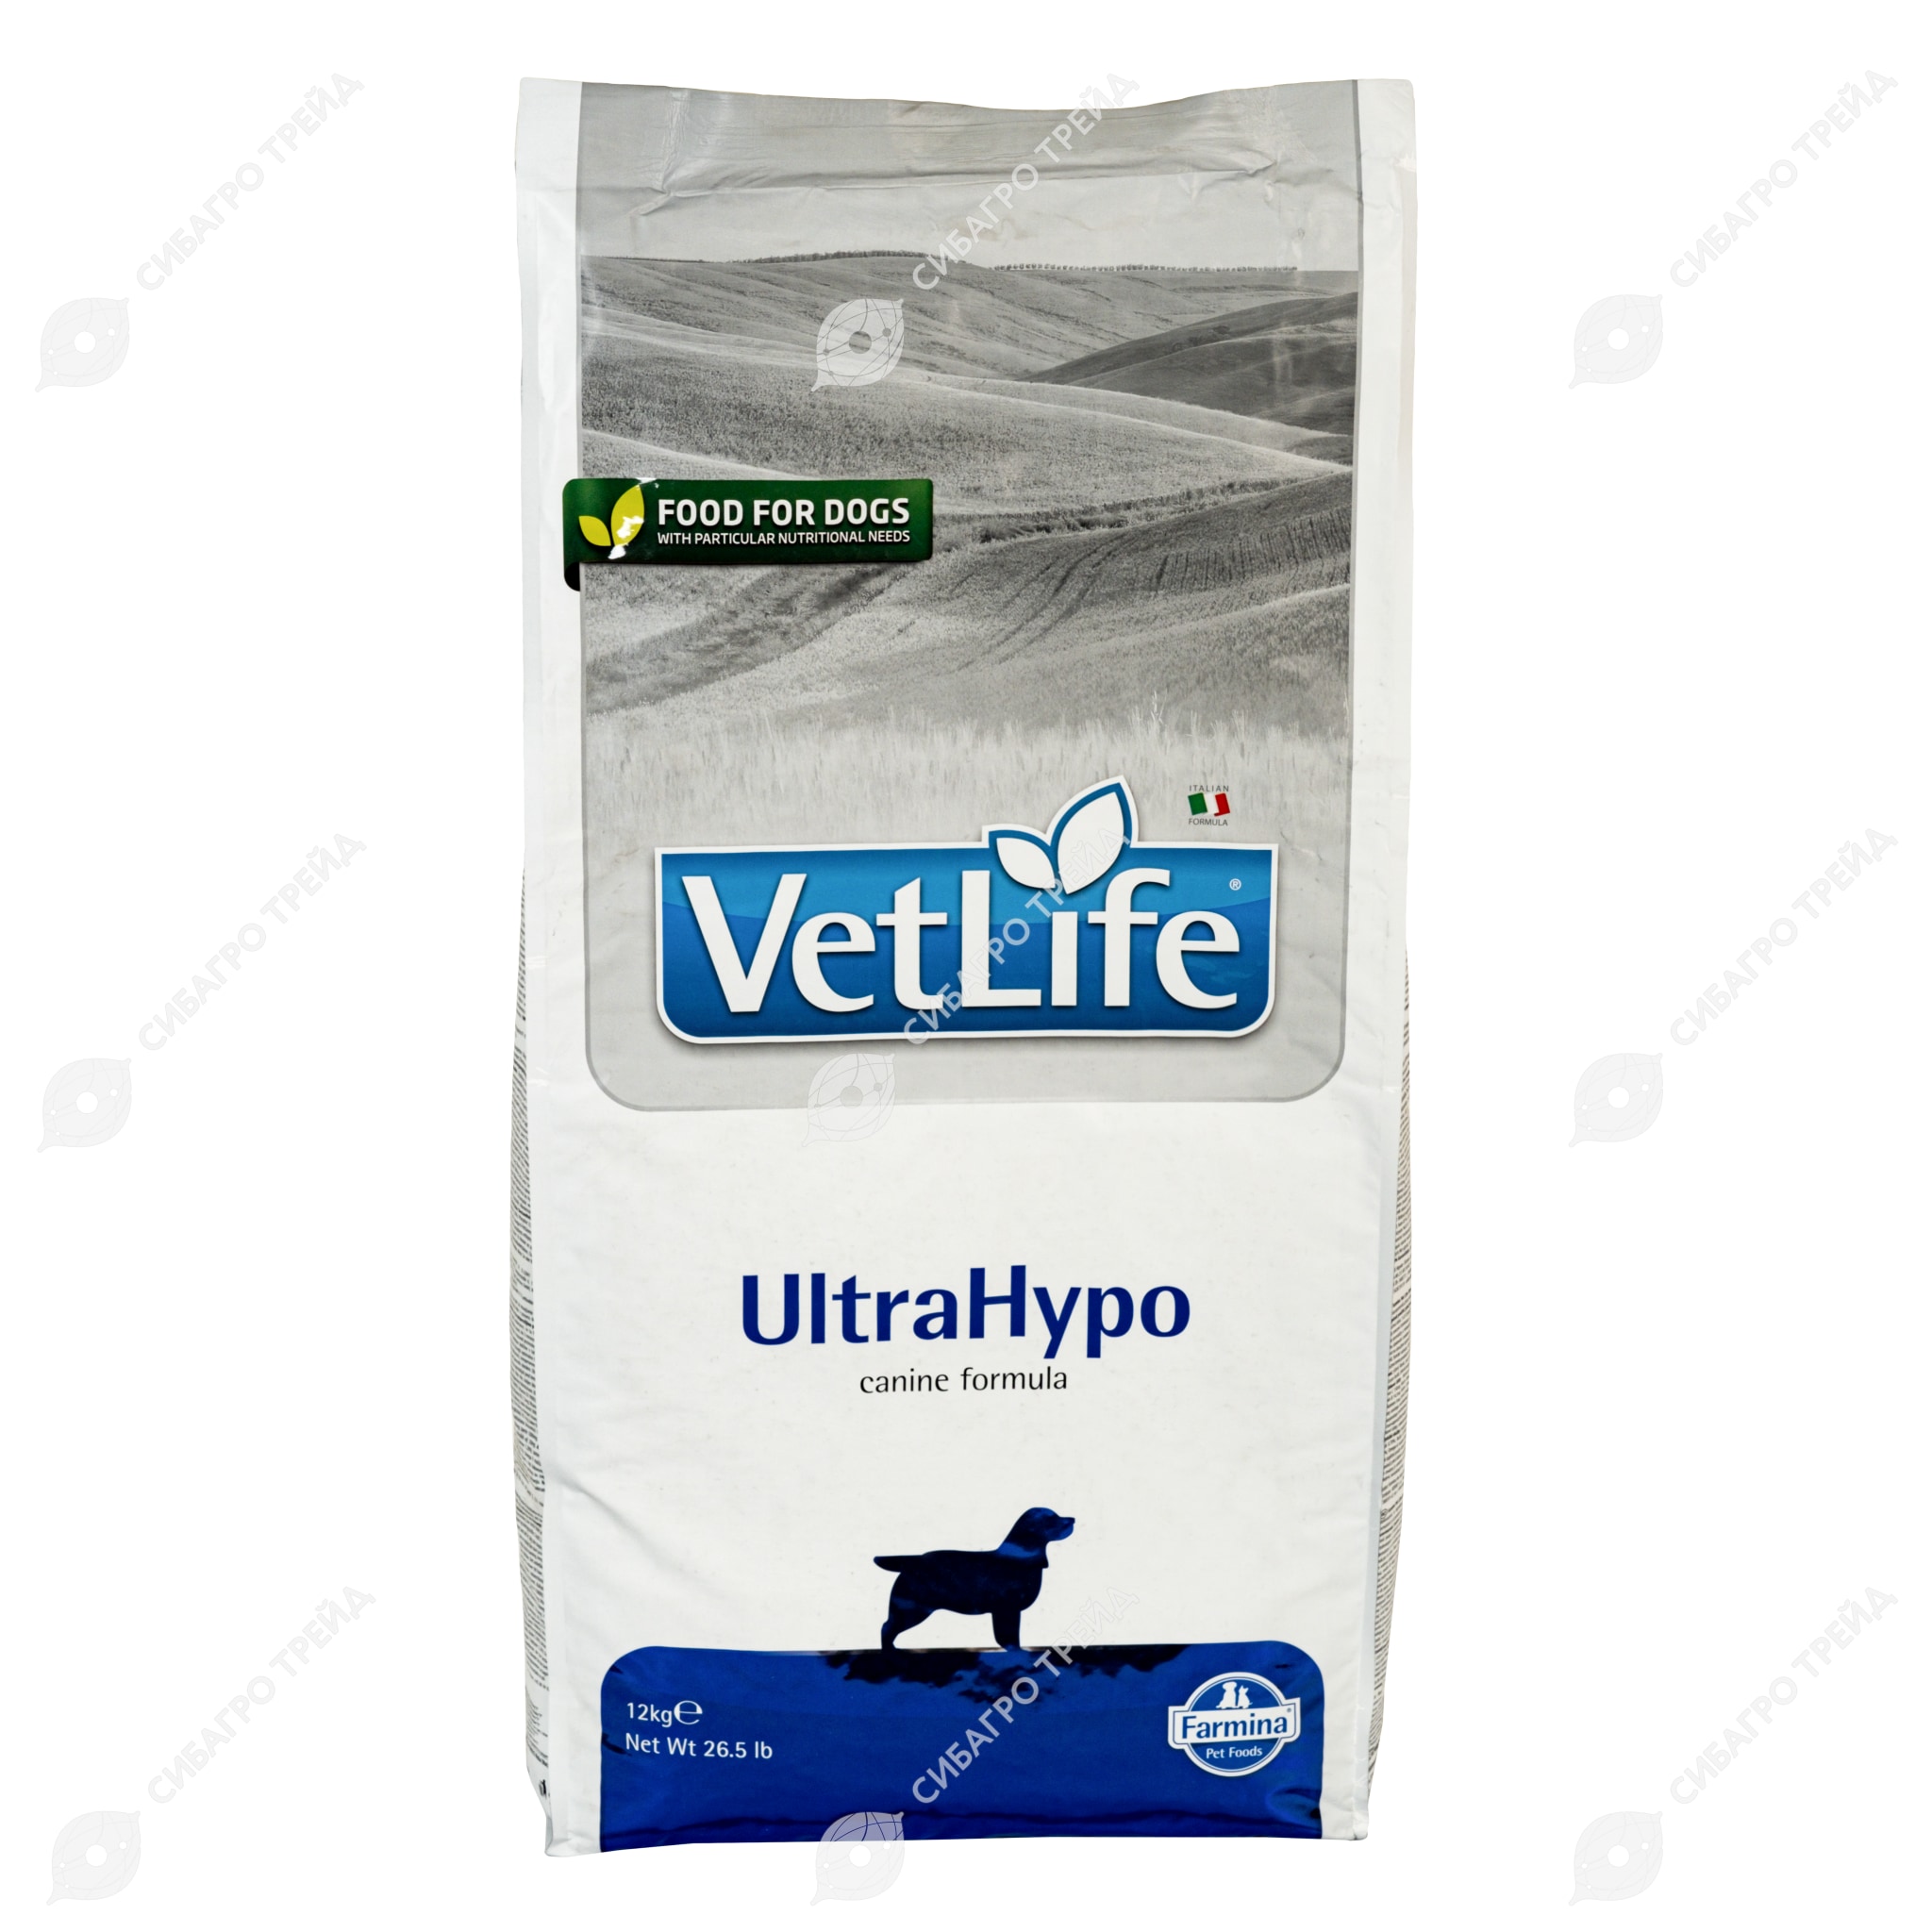 Vet life ultrahypo для собак. Farmina ULTRAHYPO для собак. Корм для собак vet Life ULTRAHYPO. Vet Life для собак. Ветлайф гипоаллергенный для собак 2кг.